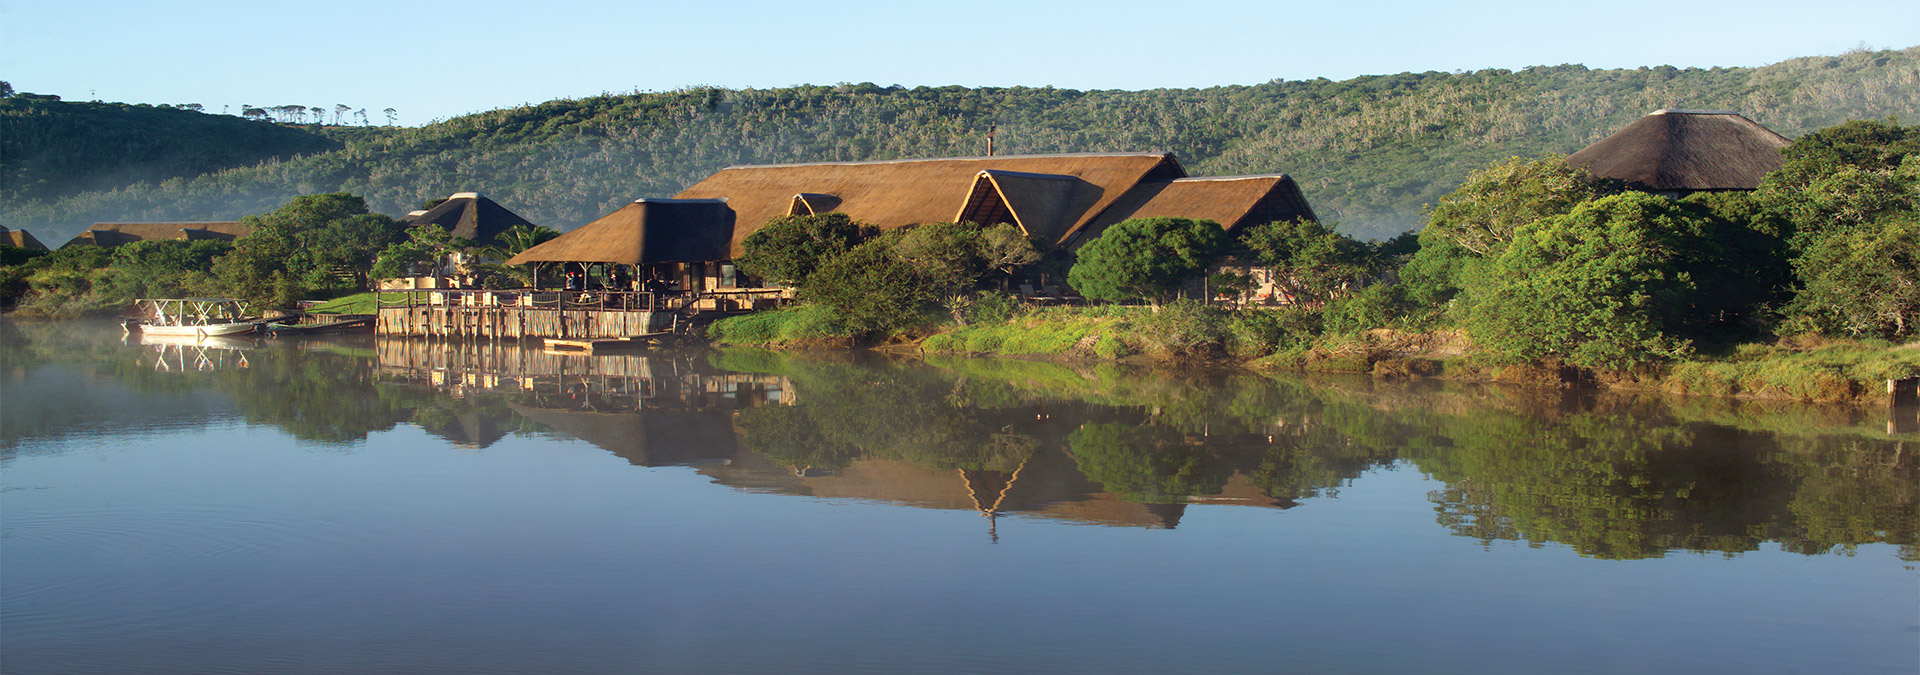 River Lodge at Kariega